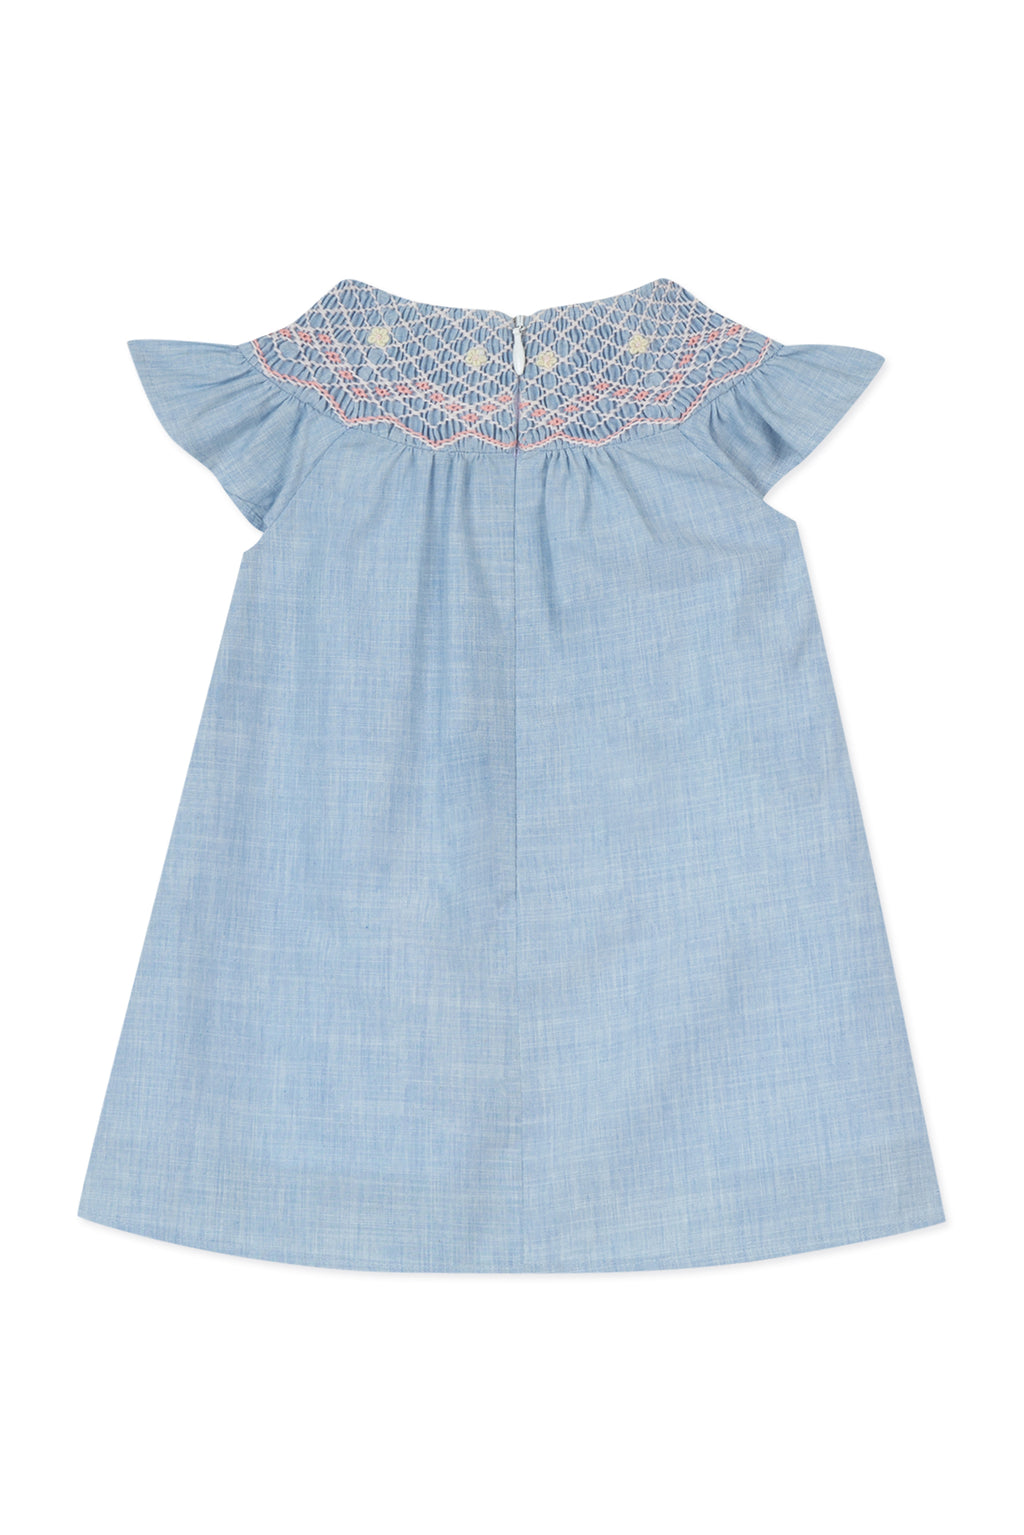 Dress - Sky blue embroidery